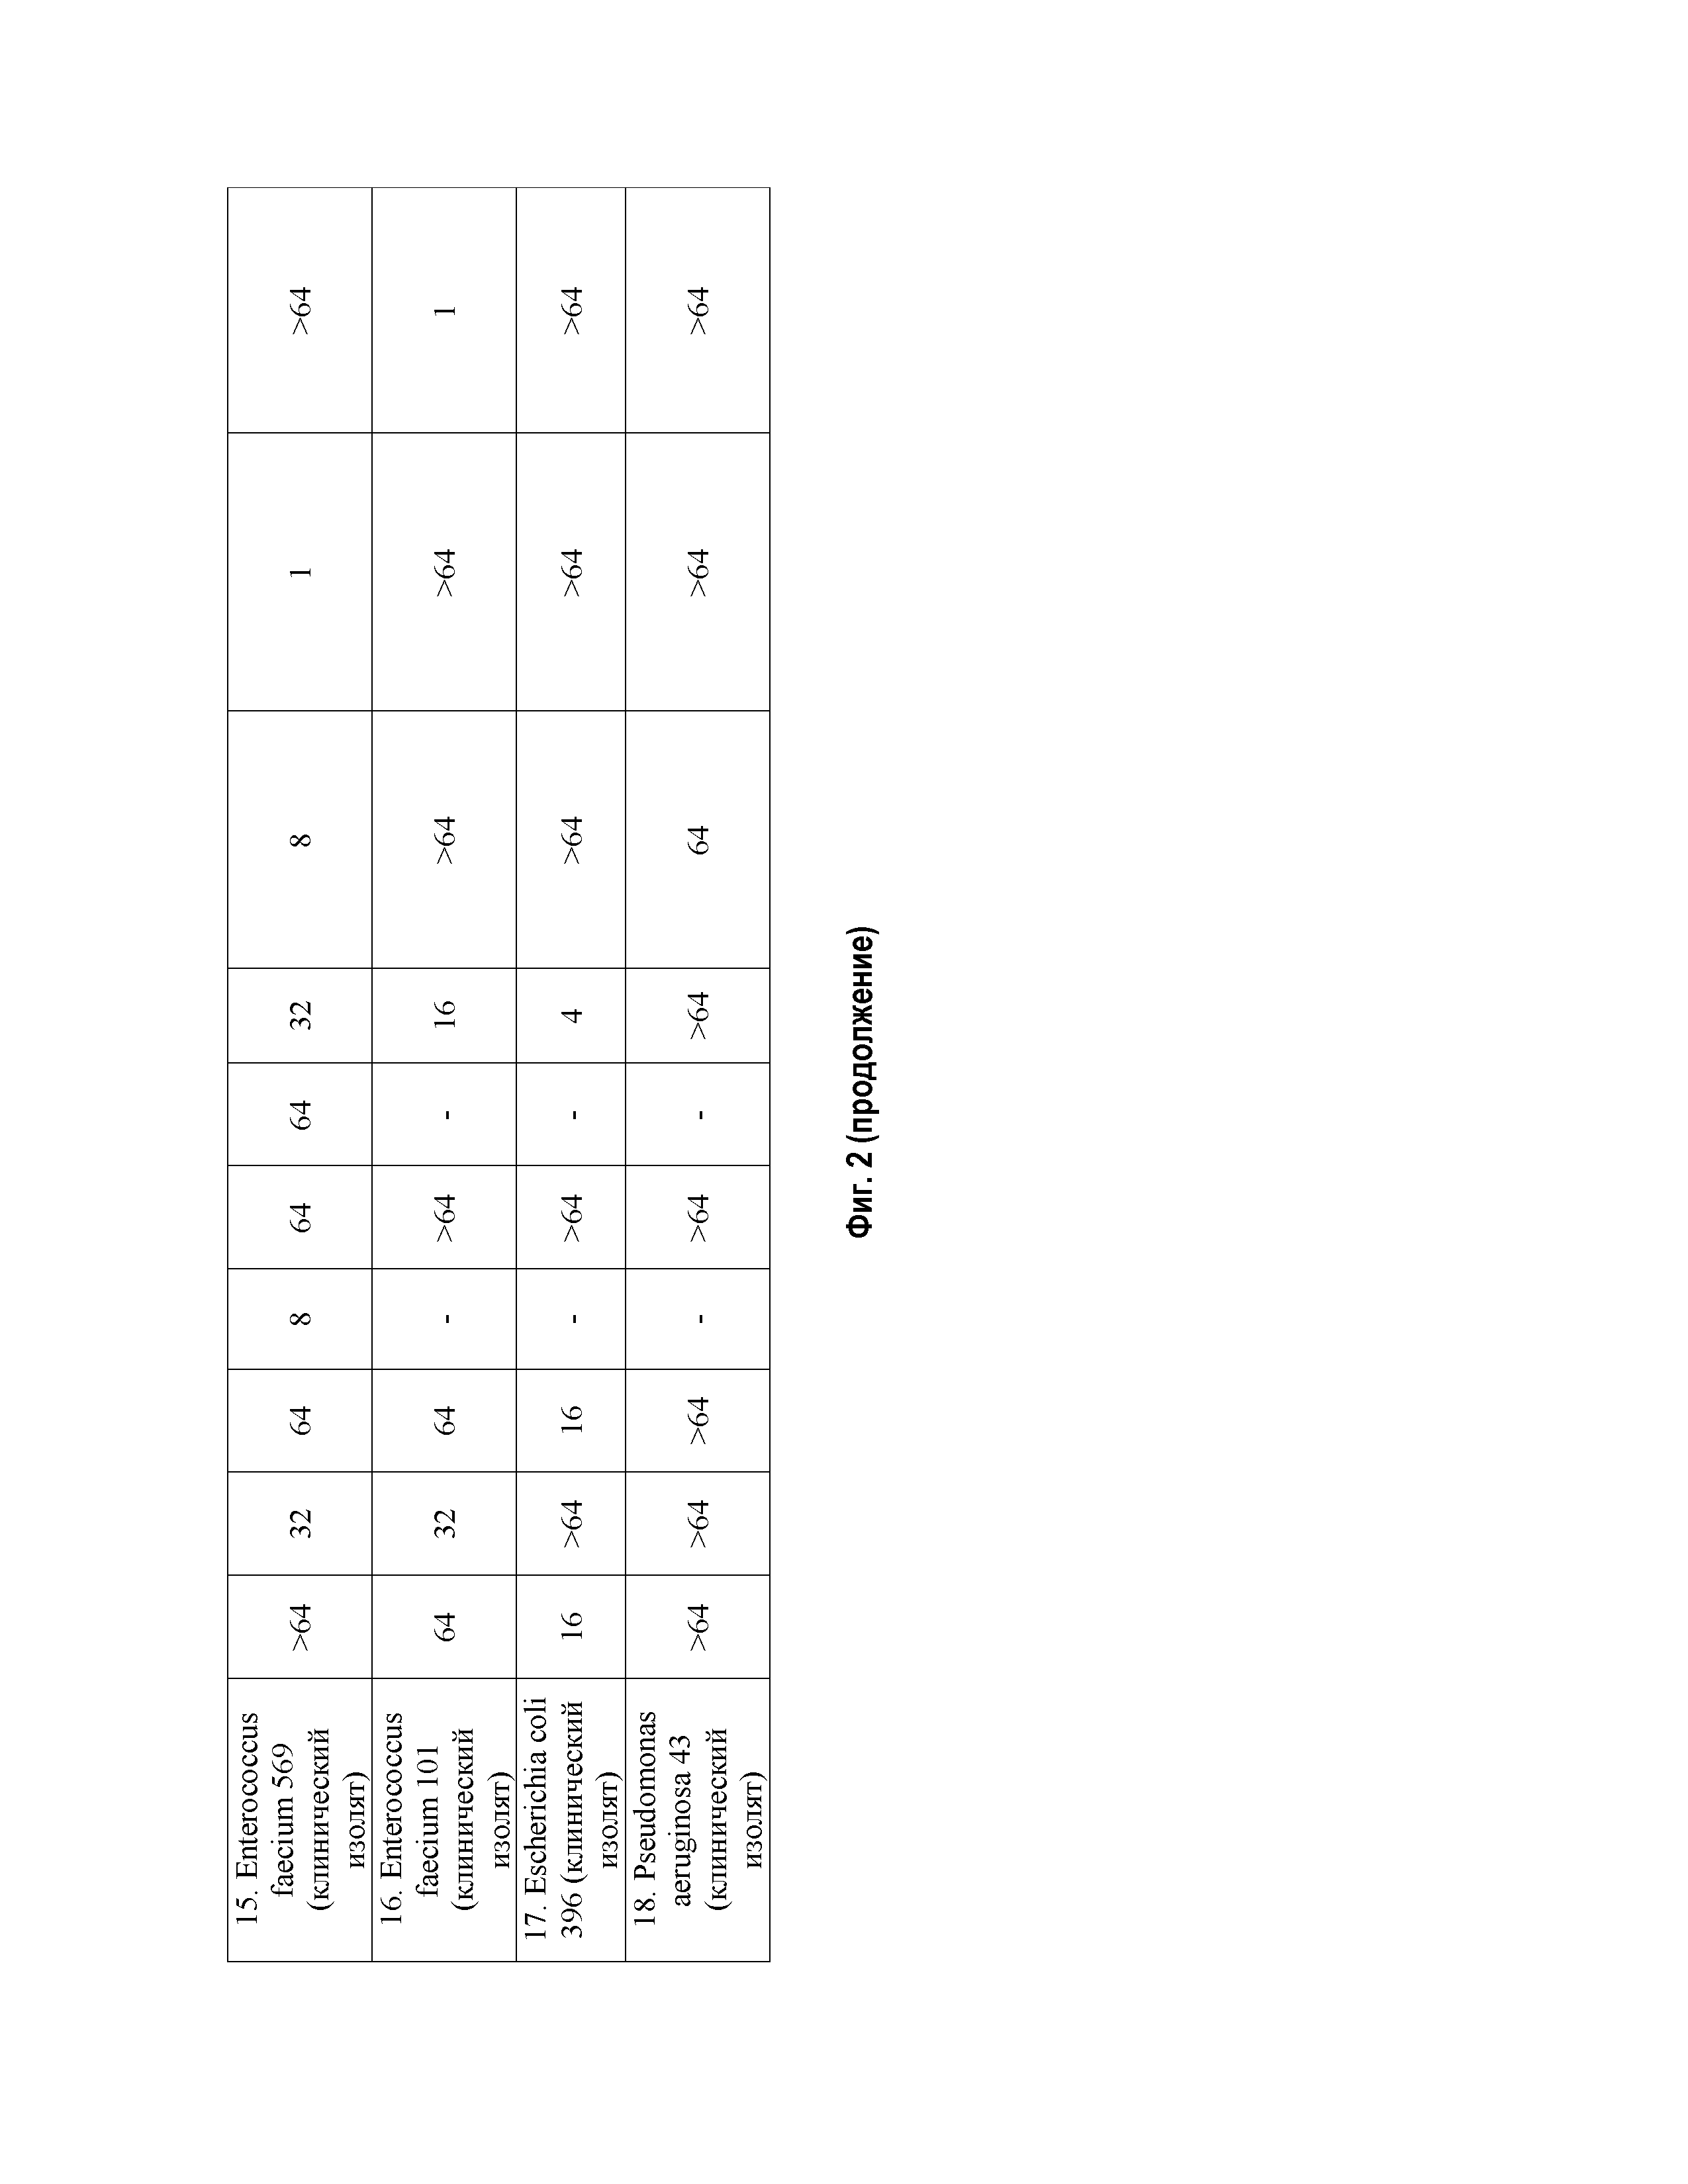 Соединения фторхинолонового ряда на основе производных пиридоксина, обладающие антибактериальными свойствами